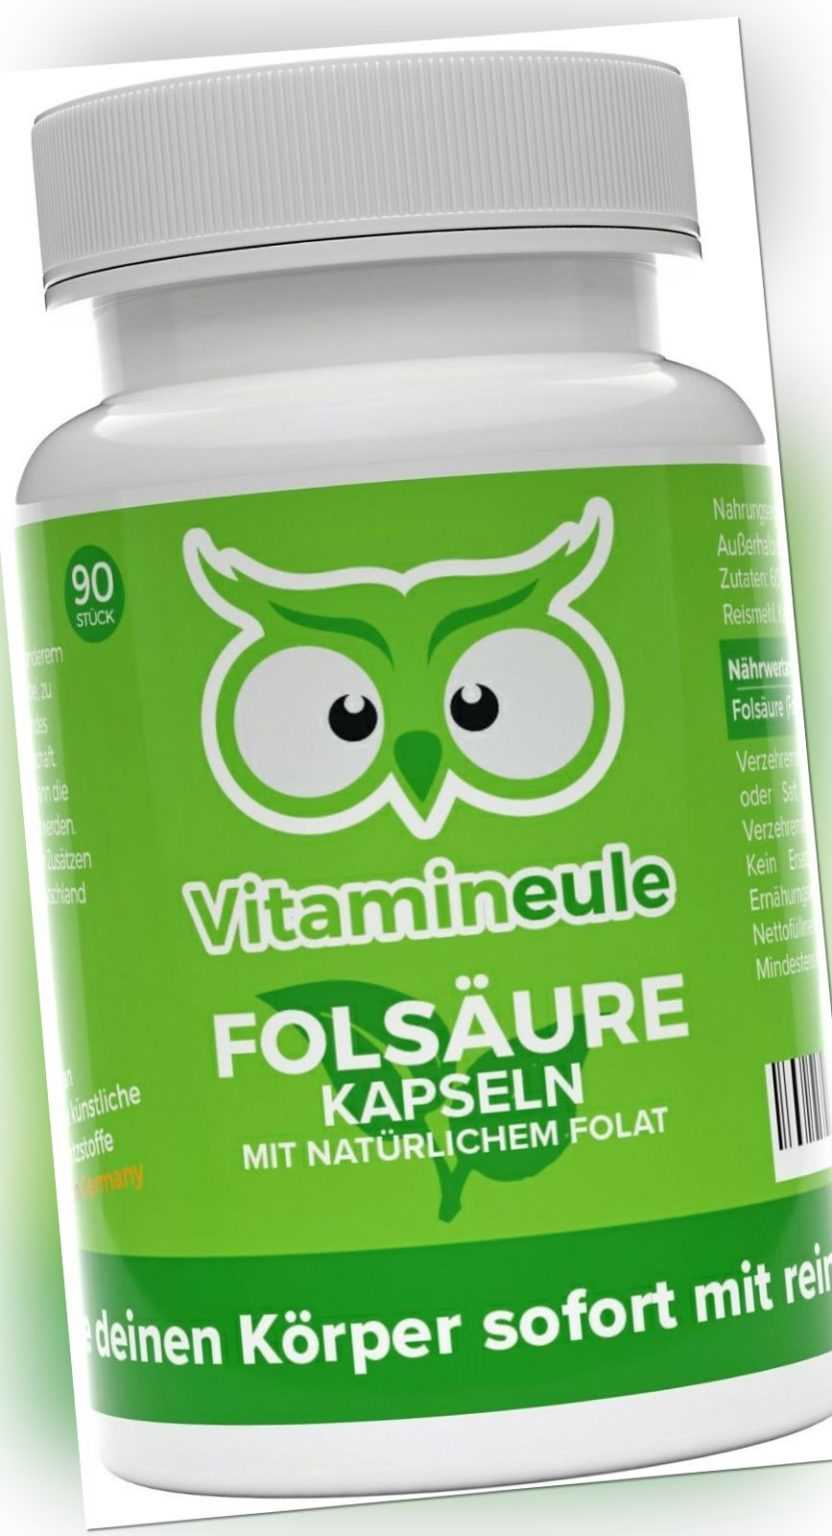 Folsäure Kapseln - 800 µg natürliches Folat - 5-MTHF ohne Zusätze - Vitamineule